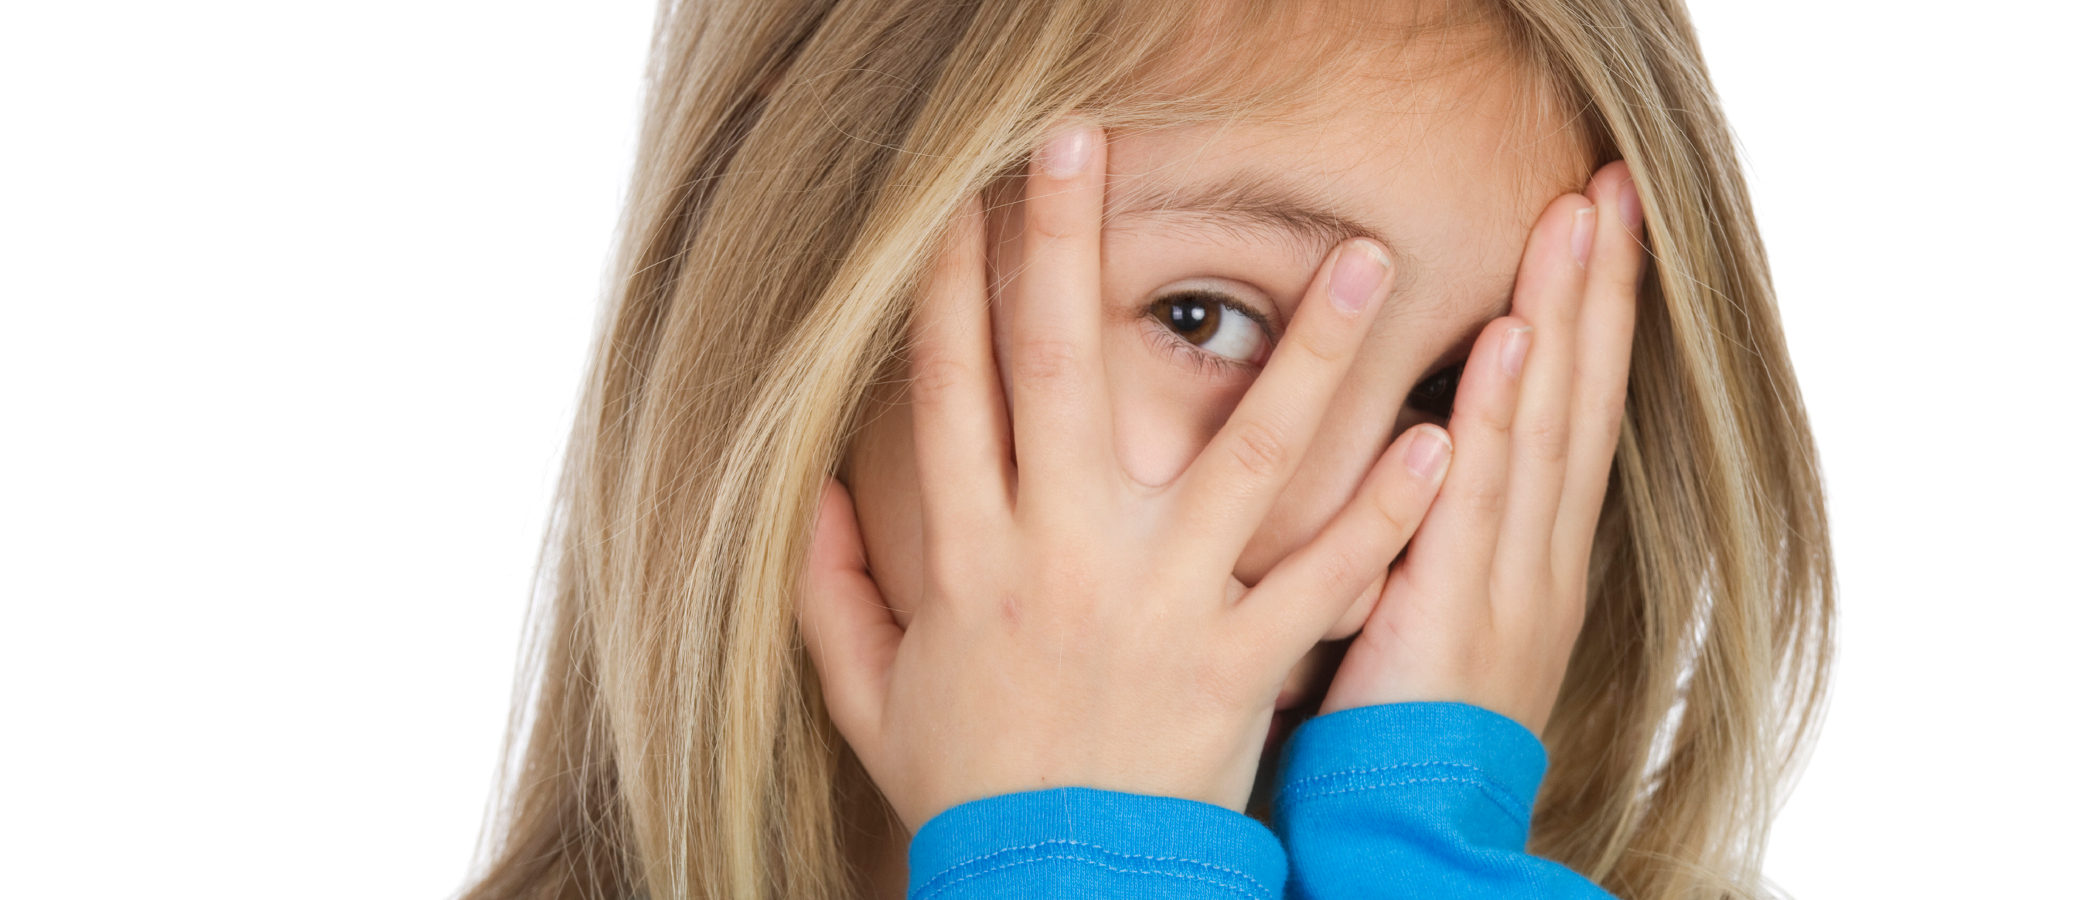 7 cosas que tenemos que evitar para no avergonzar a nuestros hijos